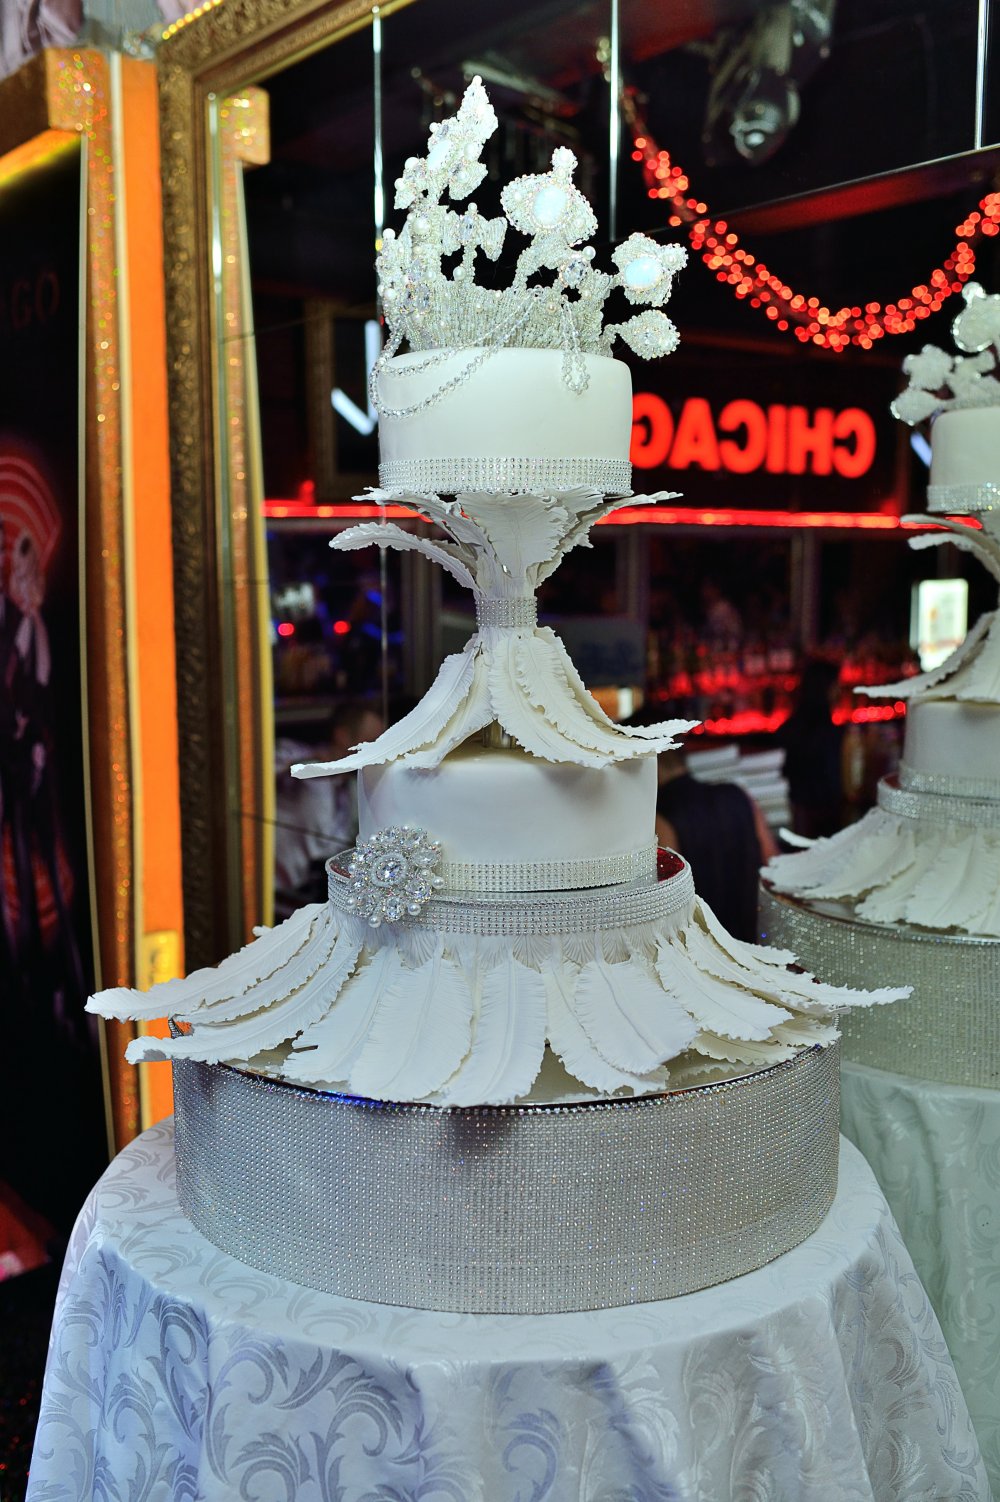 Авторский торт для afterparty показа YANASTASYA  кондитерской "Колесо времени".
Эксклюзивный свадебный торт на заказ - исключительно натуральный, авторский декор. На дегустации 15 начинок на выбор. Доставка. Заказ на сайте нашей кондитерской.